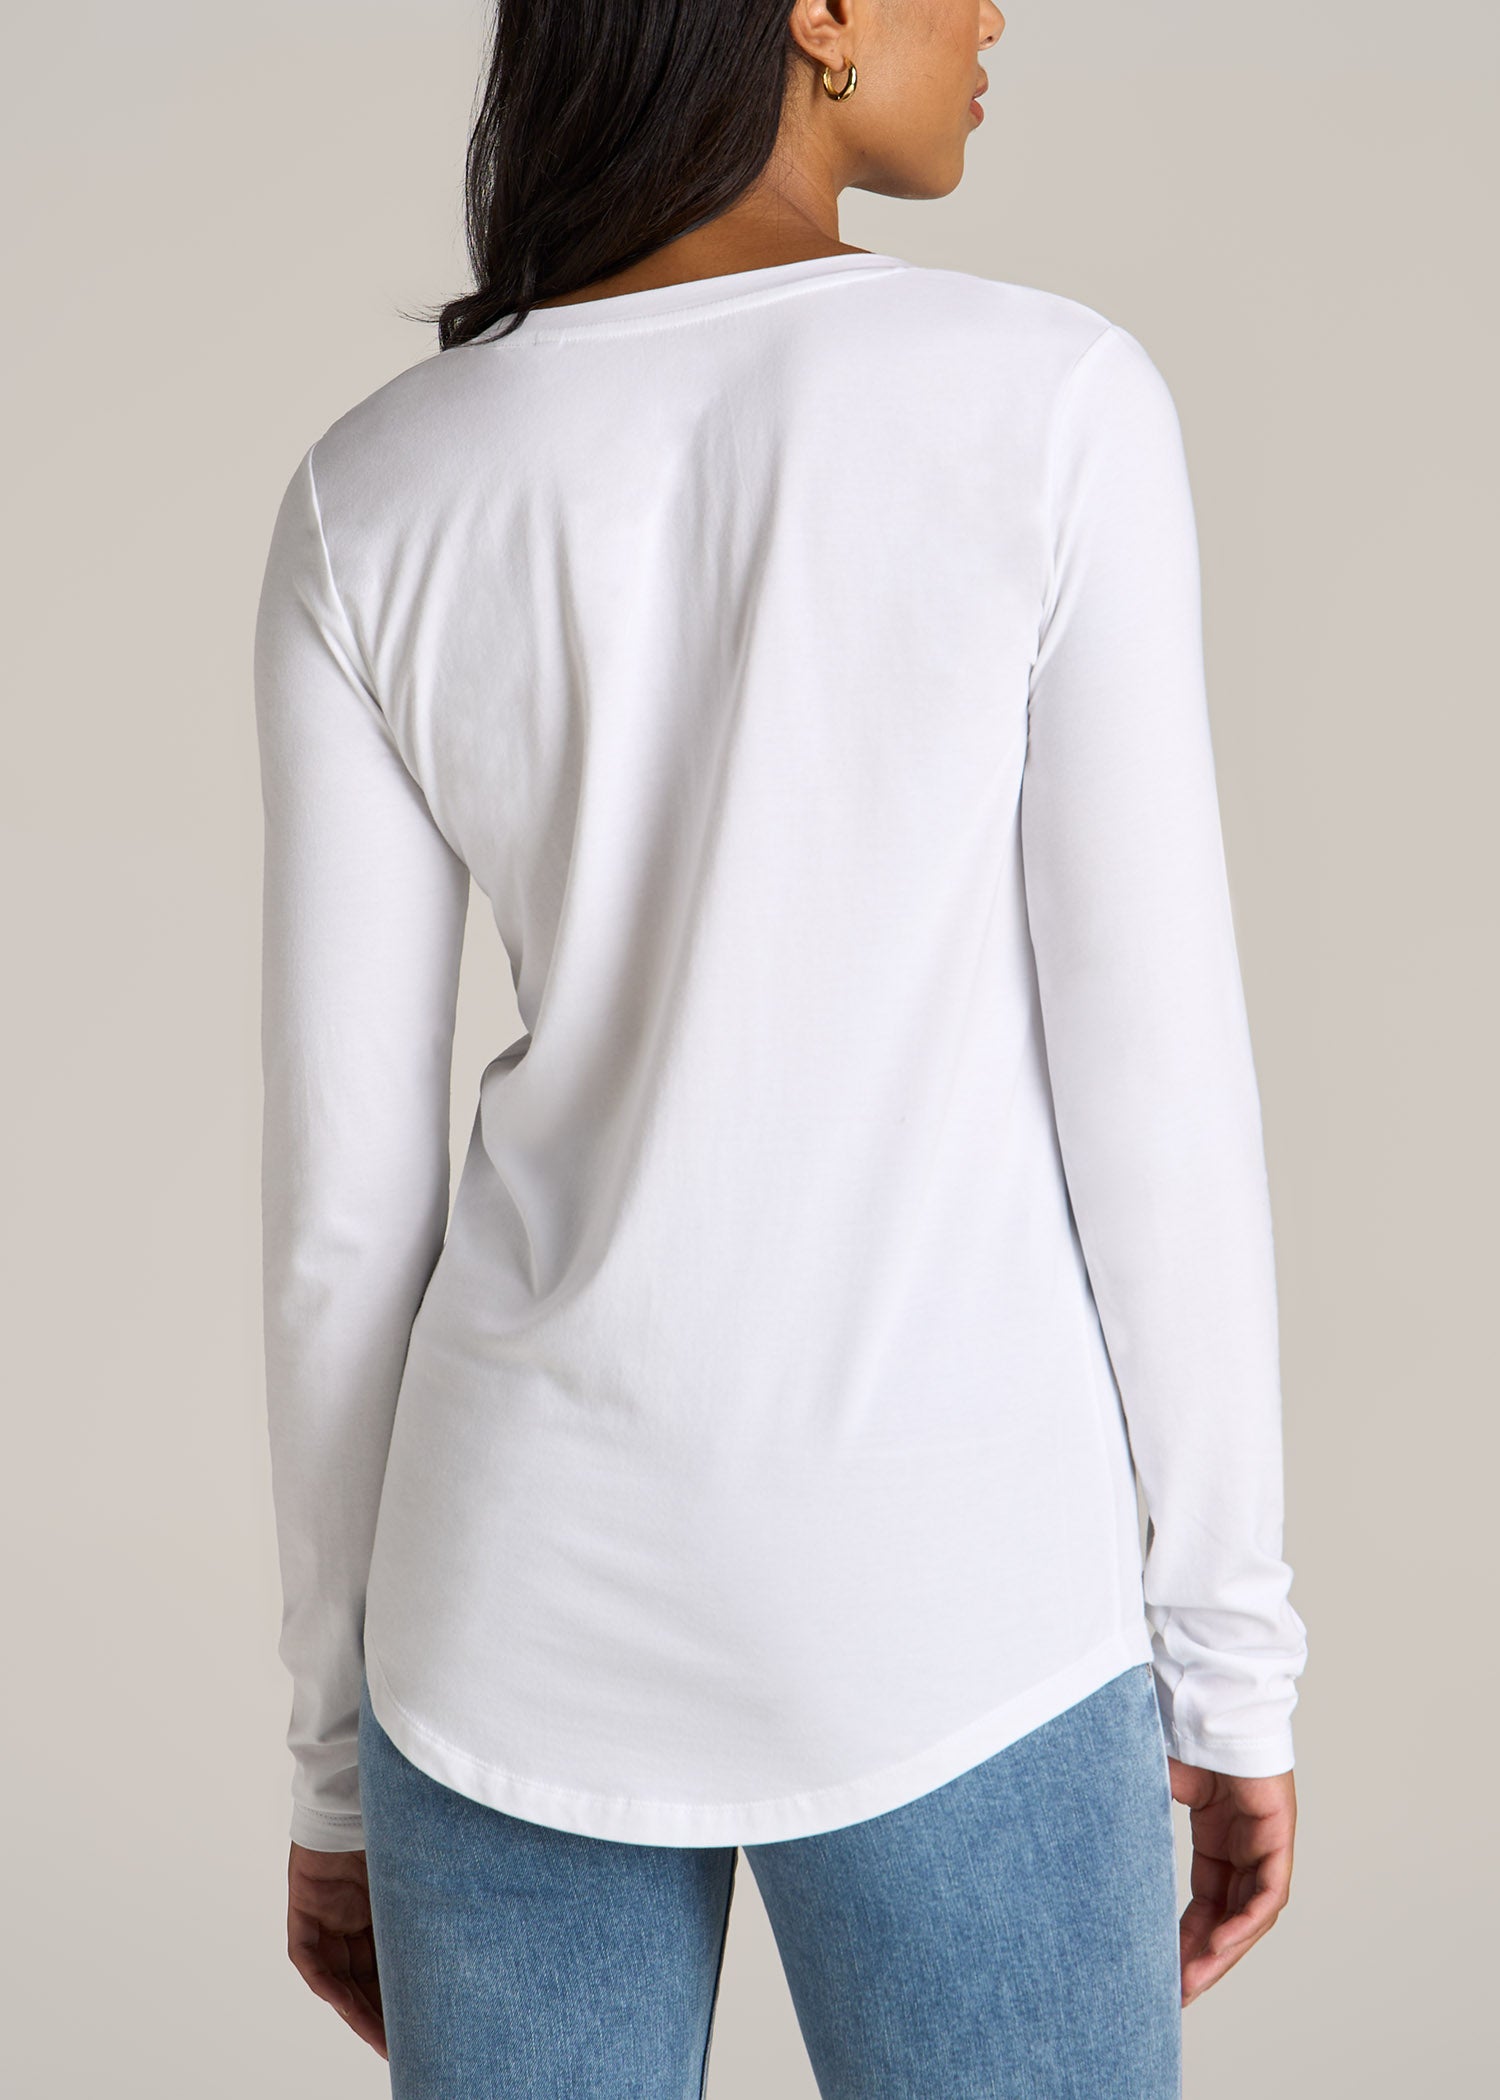 Long Sleeve Scoop V-Neck Tee Shirt for Tall Women in White